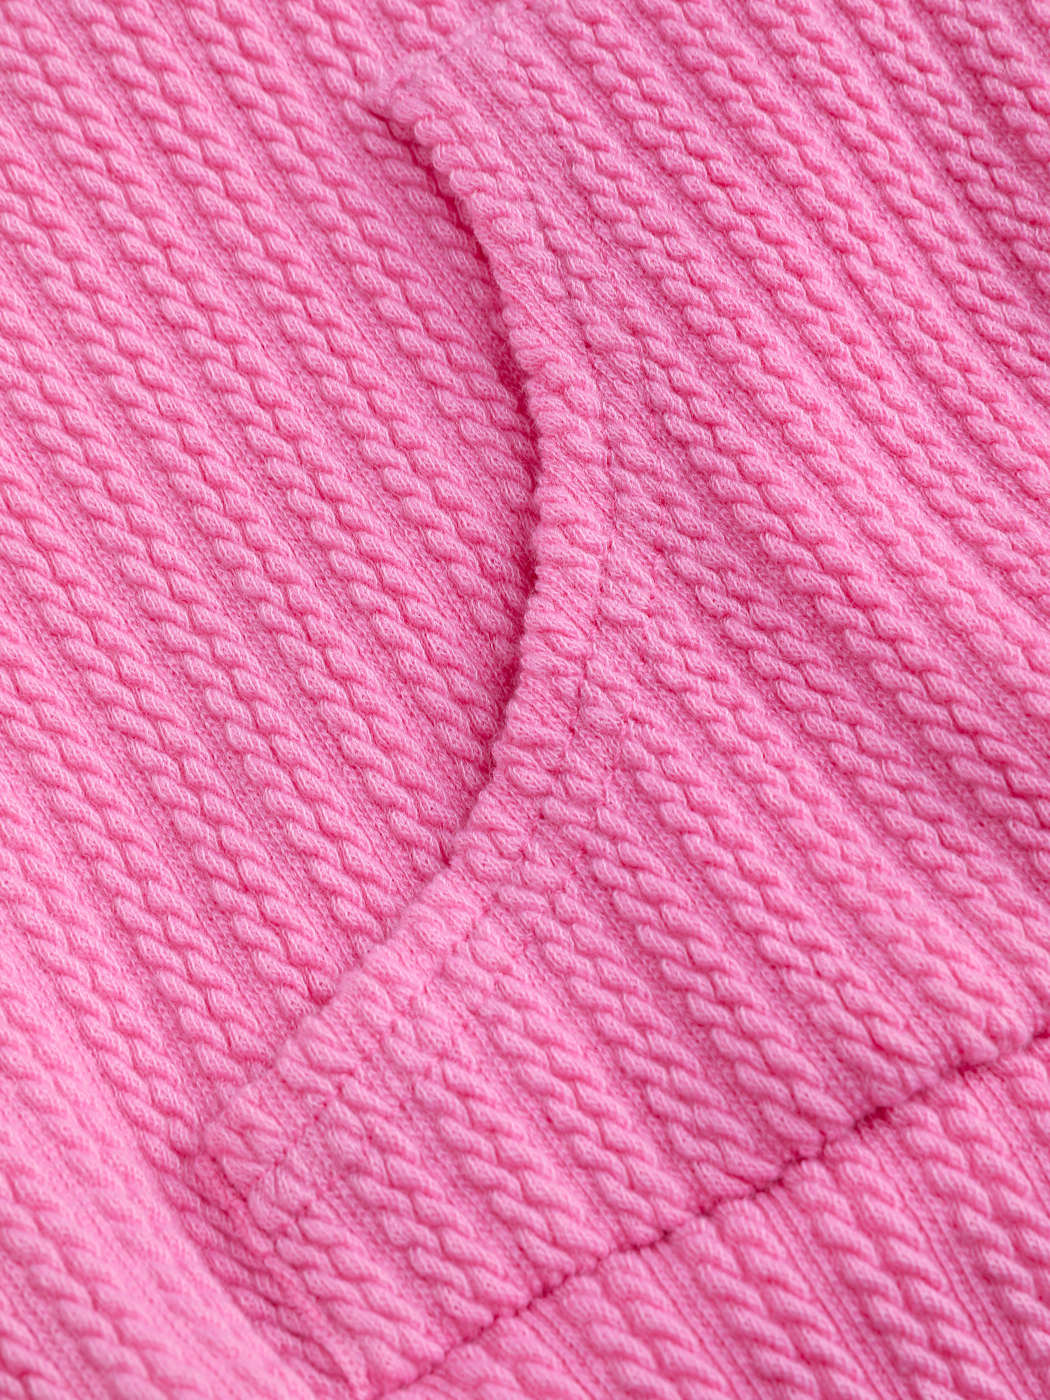 Crop Hoodies - Solid Light Pink